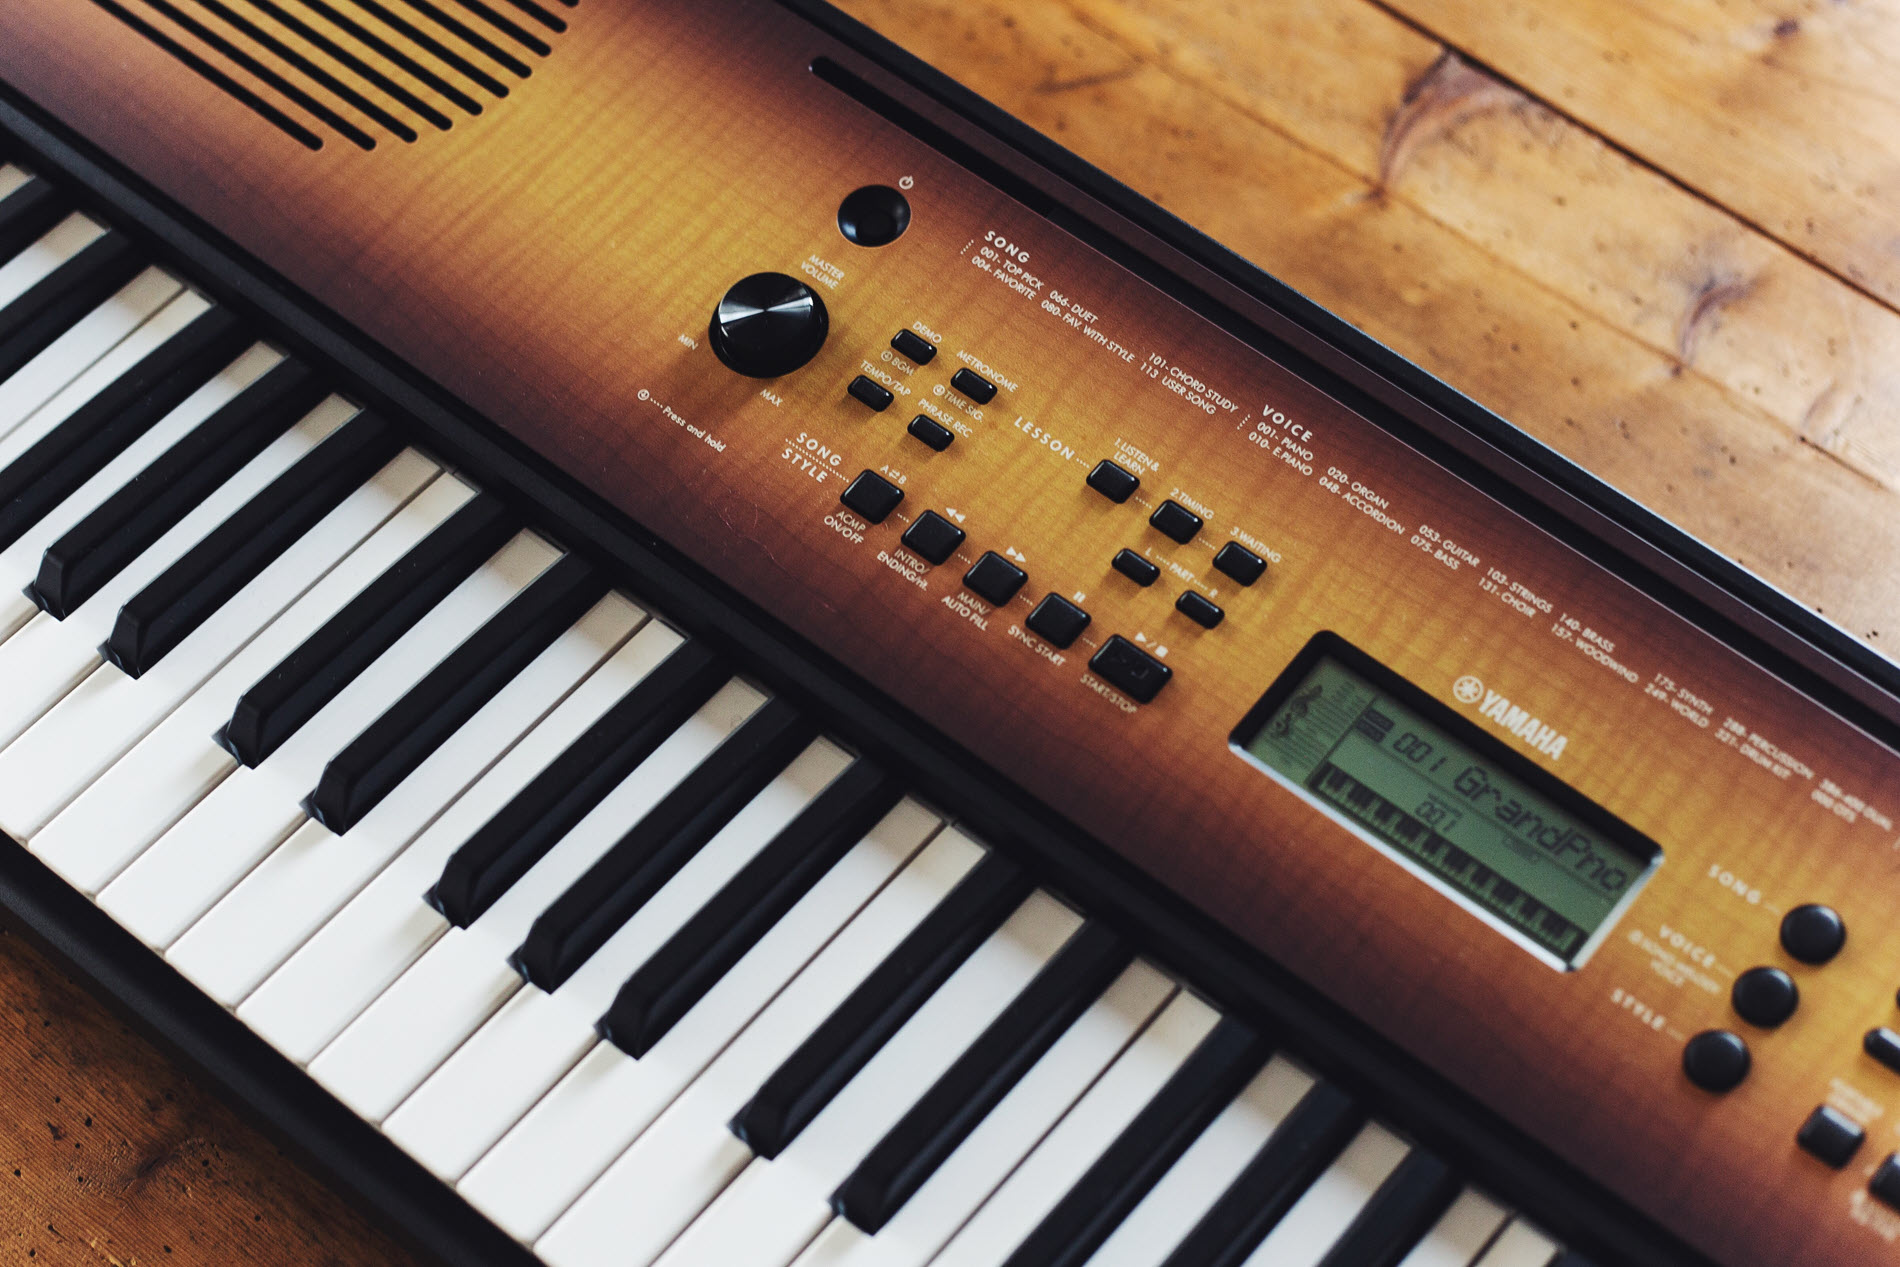 Closeup of an electronic piano keyboard.